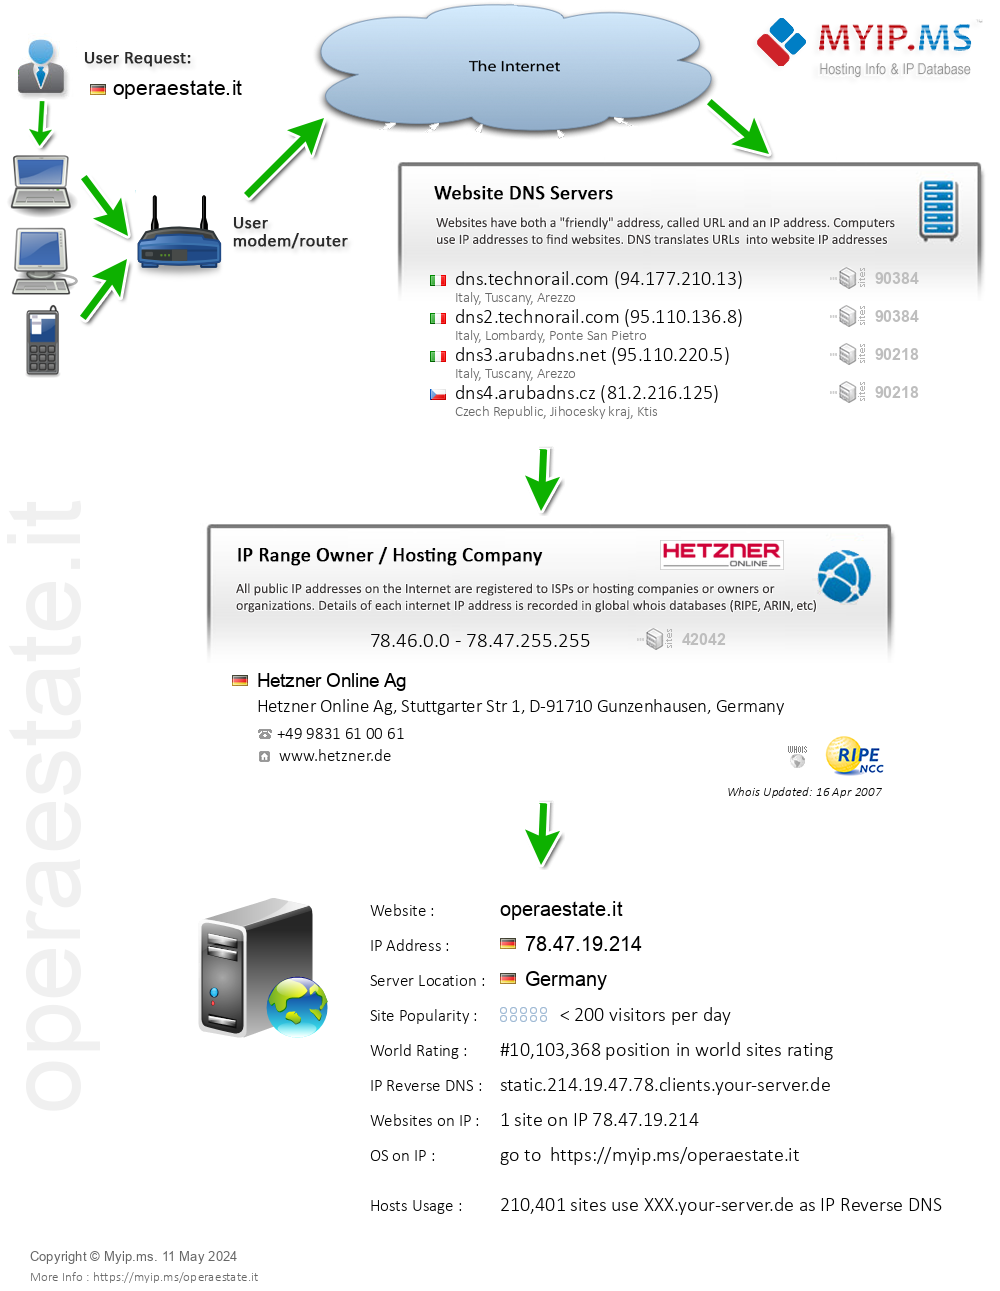 Operaestate.it - Website Hosting Visual IP Diagram